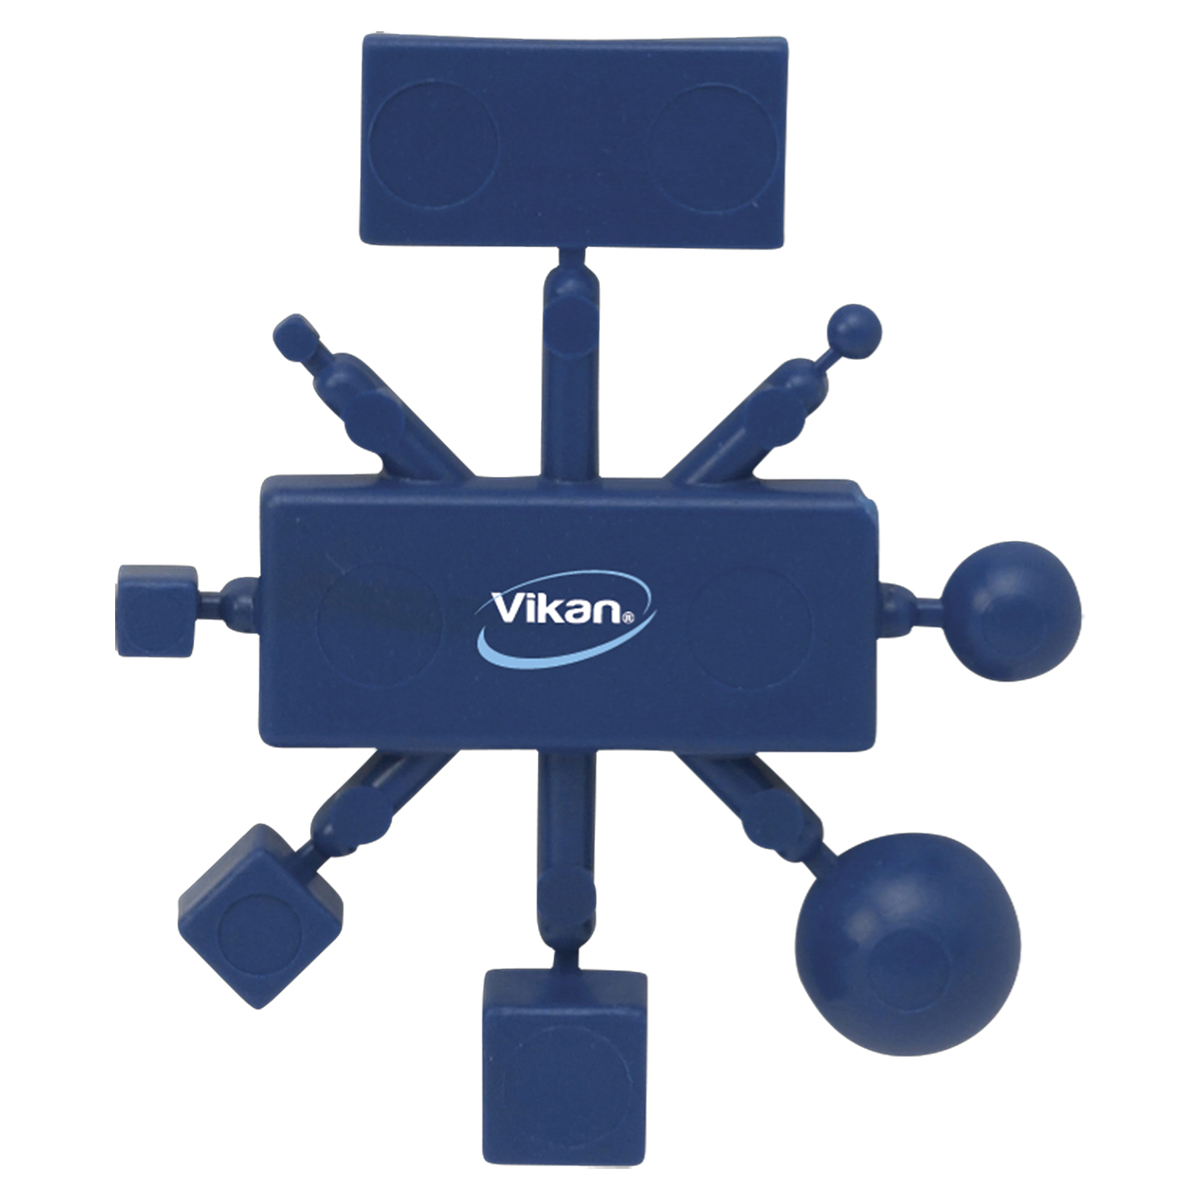 Vikan Test-Kit für Metalldetektion, ArtNr.: VIK1111